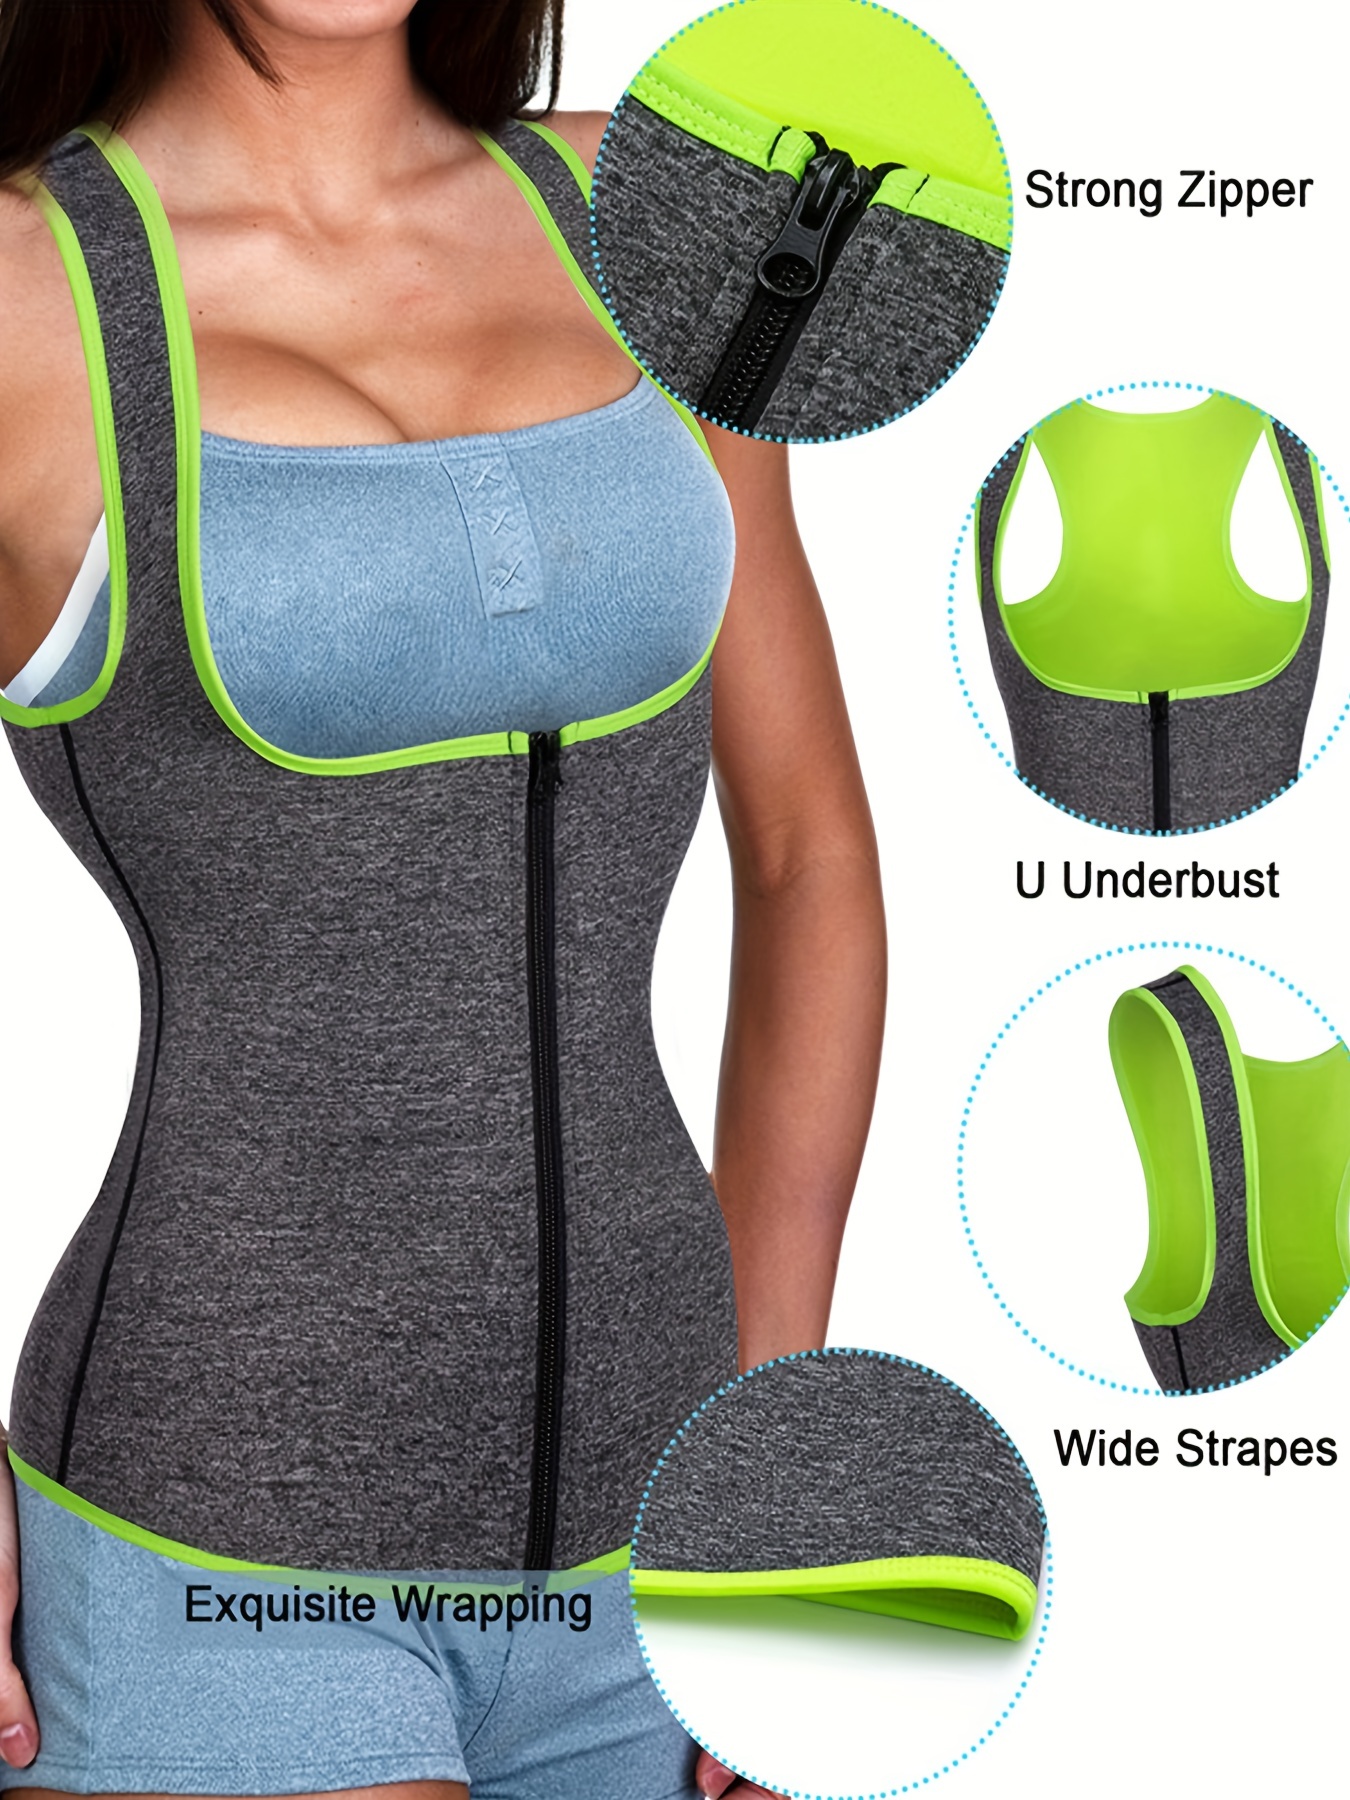  Women Sauna Suit Workout Jacket Hot Sweat Shirt Body Shaper  Waist Trainer Fitness Top Long Sleeve Neoprene Zipper : Sports & Outdoors